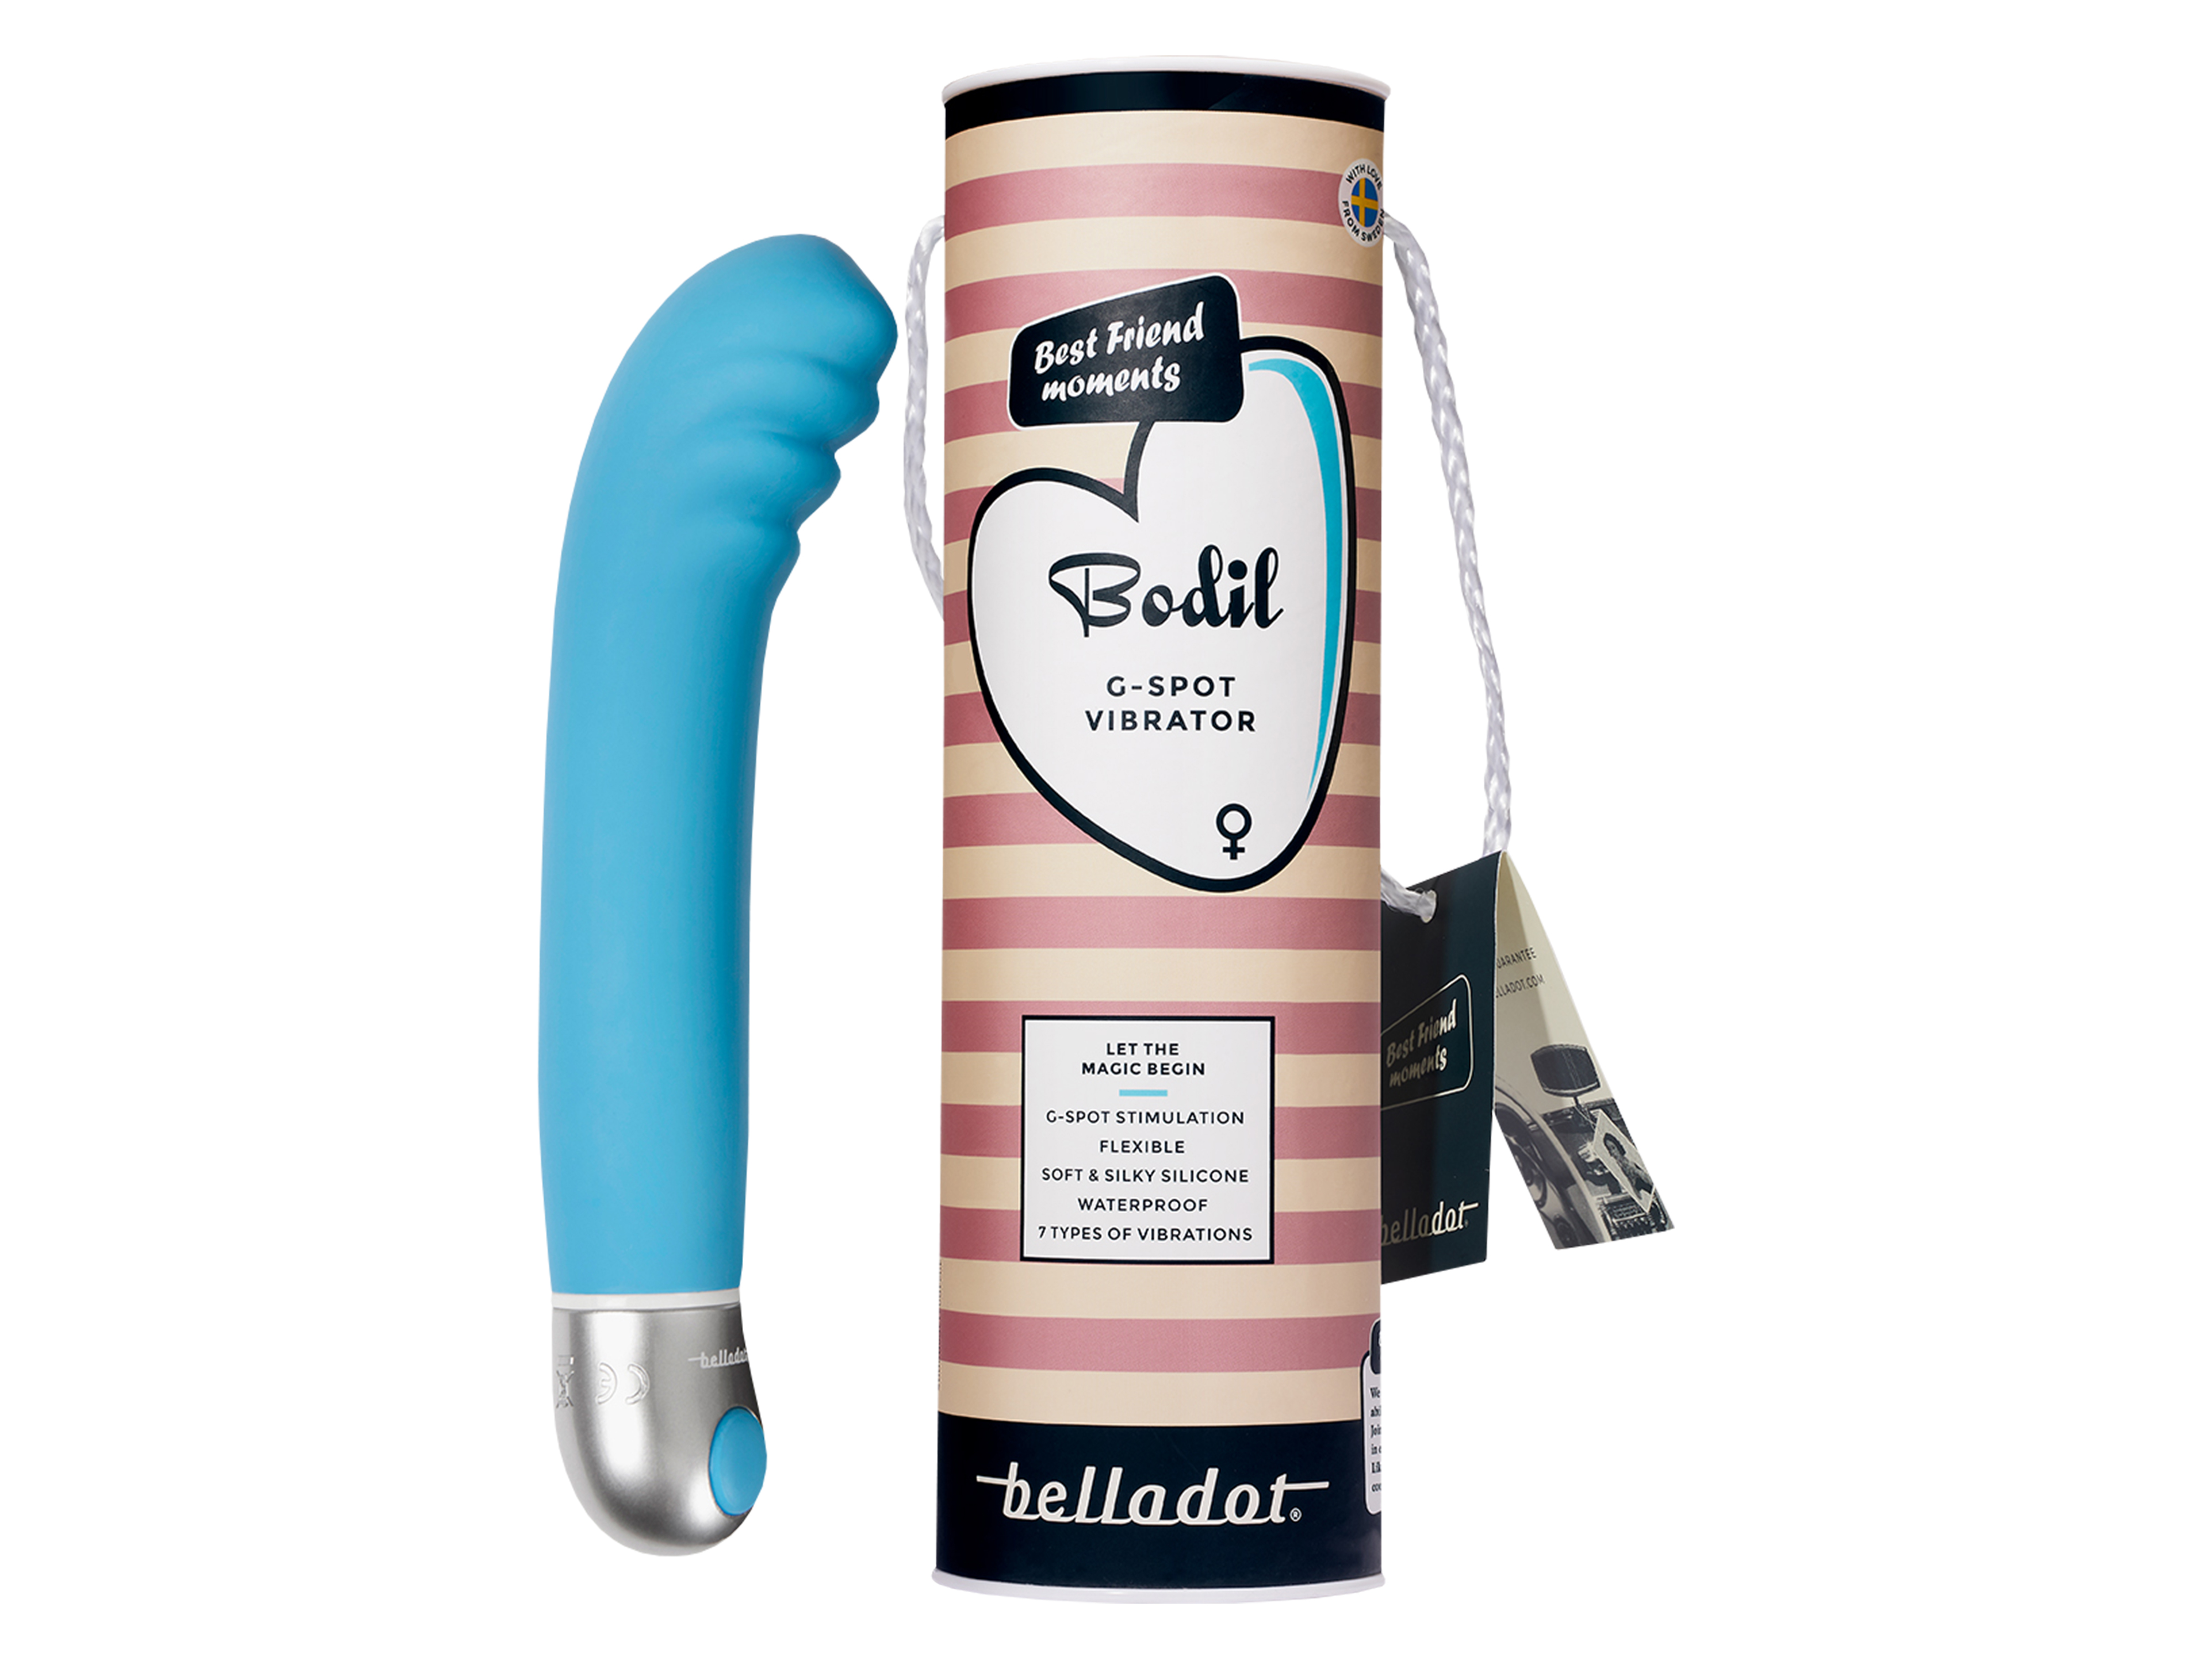 Belladot Bodil G-Spot Vibrator, Blå, 1 stk.